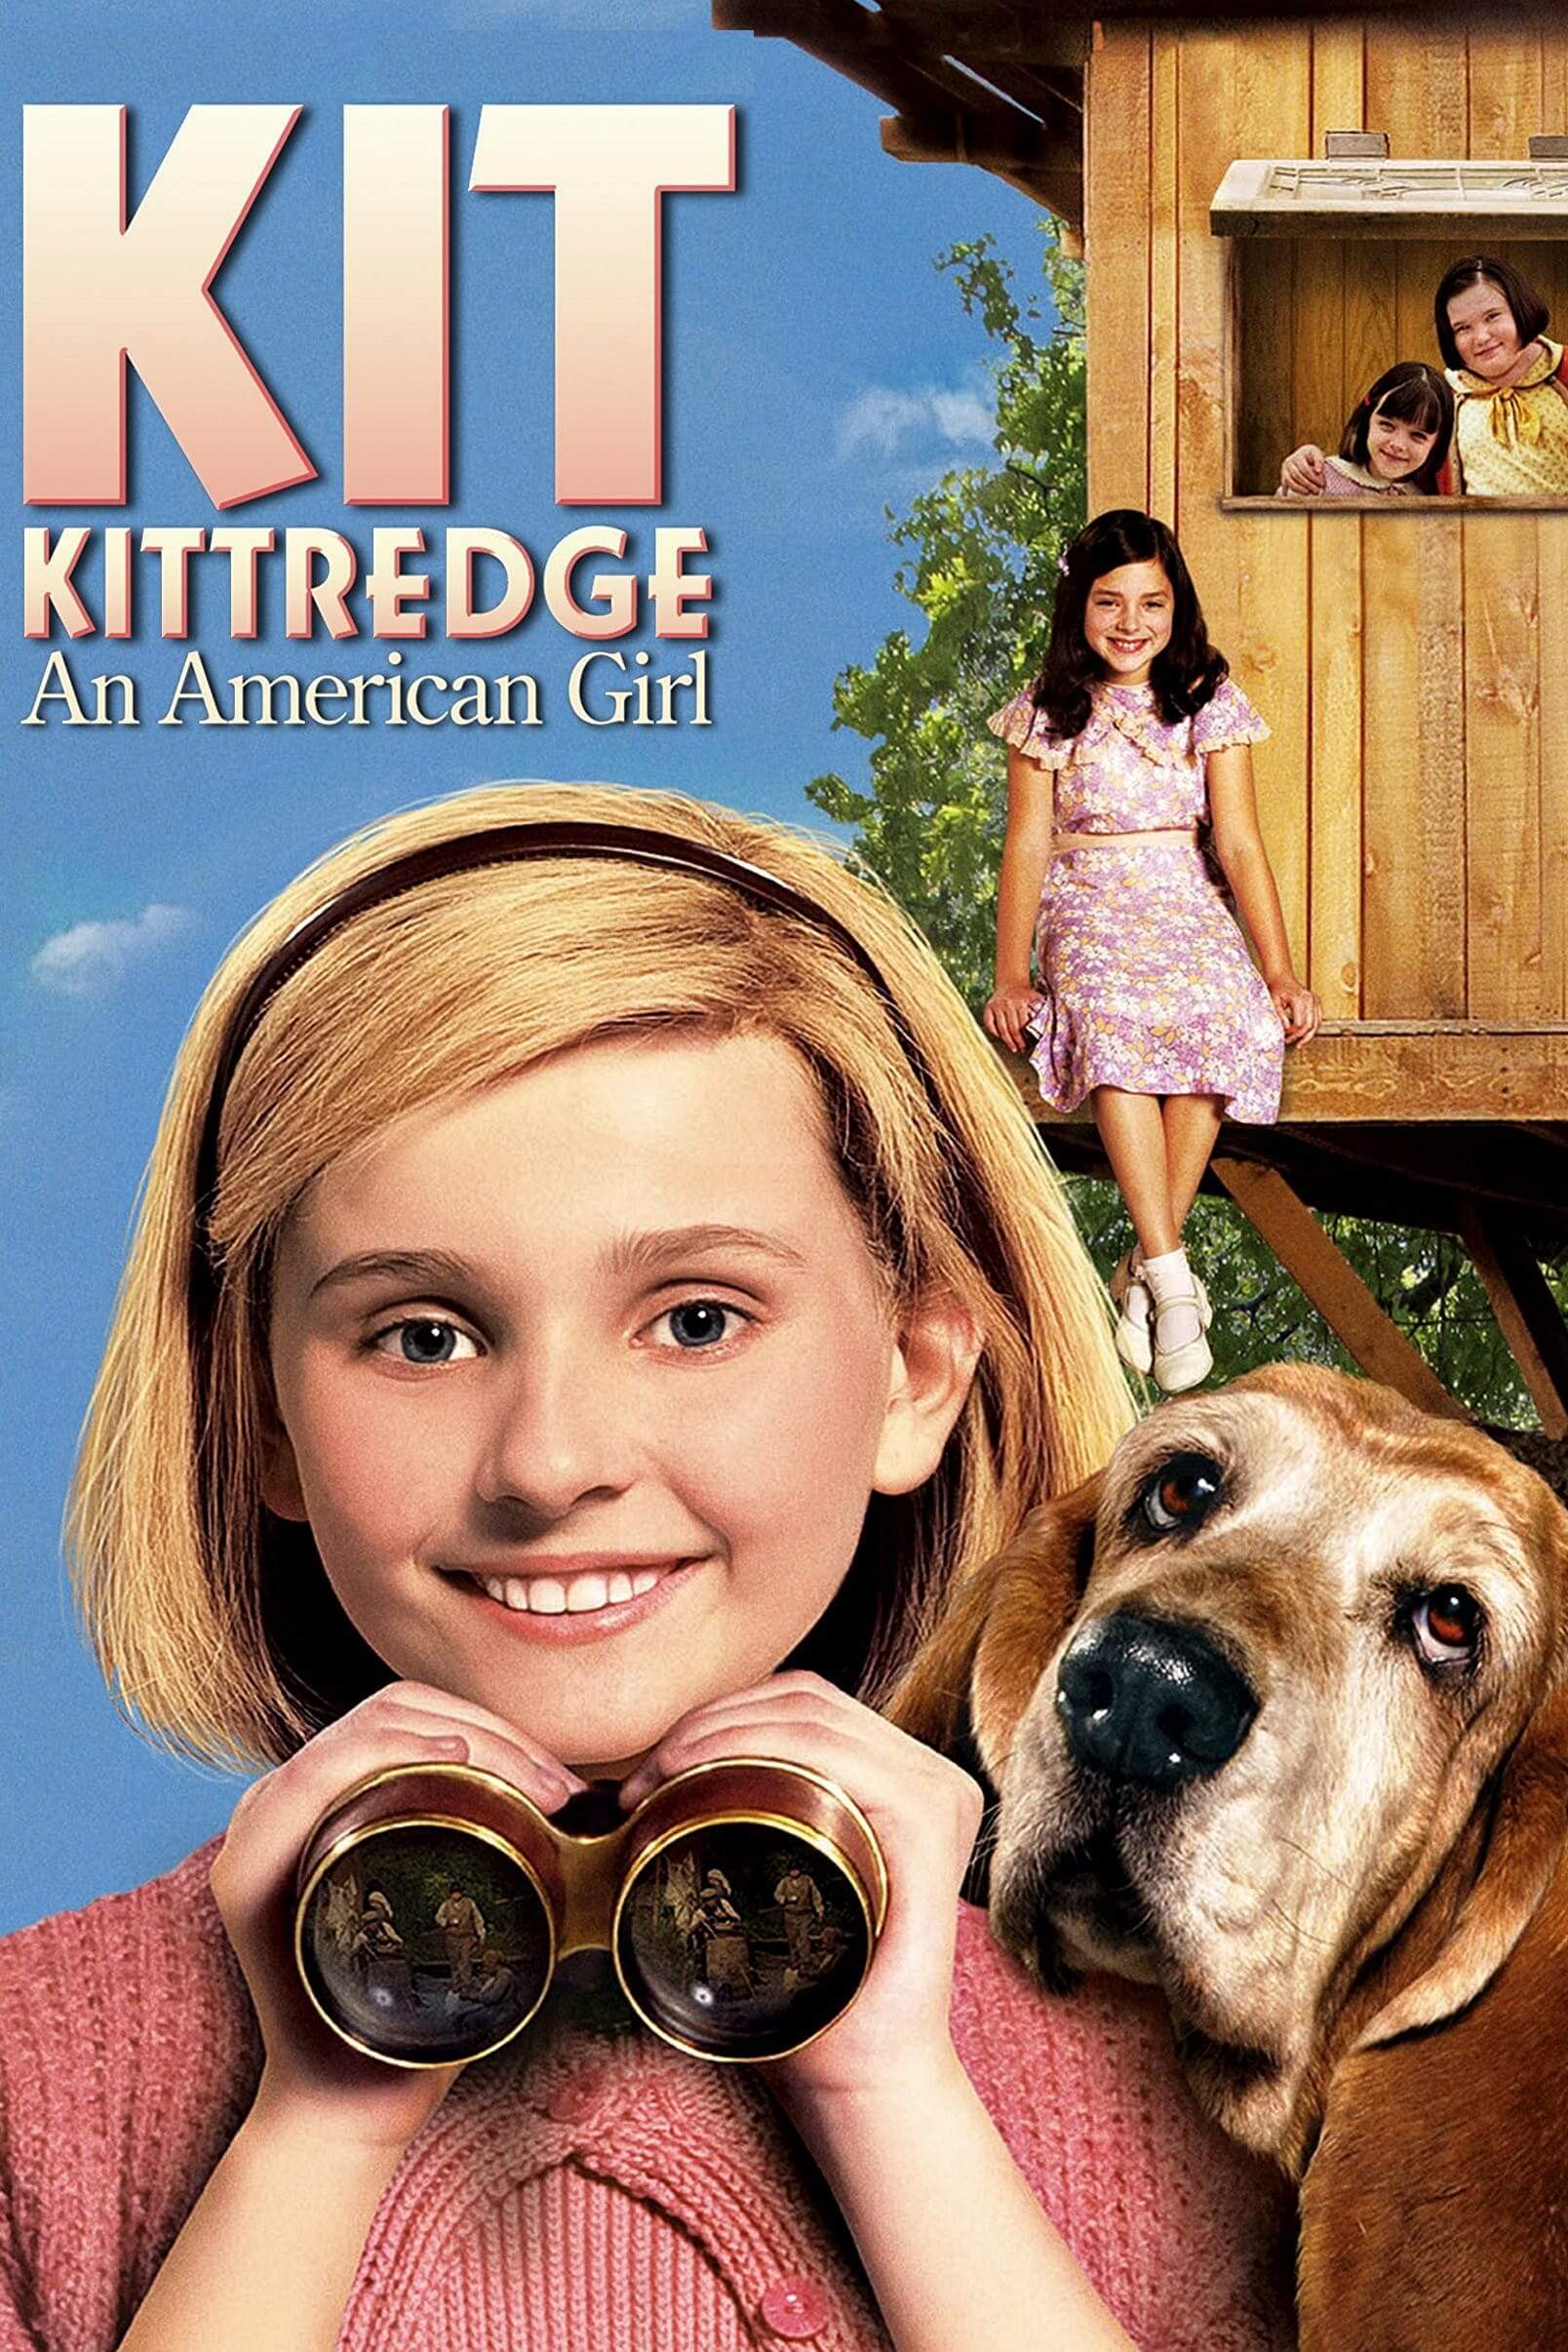 کیت کیترج: یک دختر آمریکایی (Kit Kittredge: An American Girl)